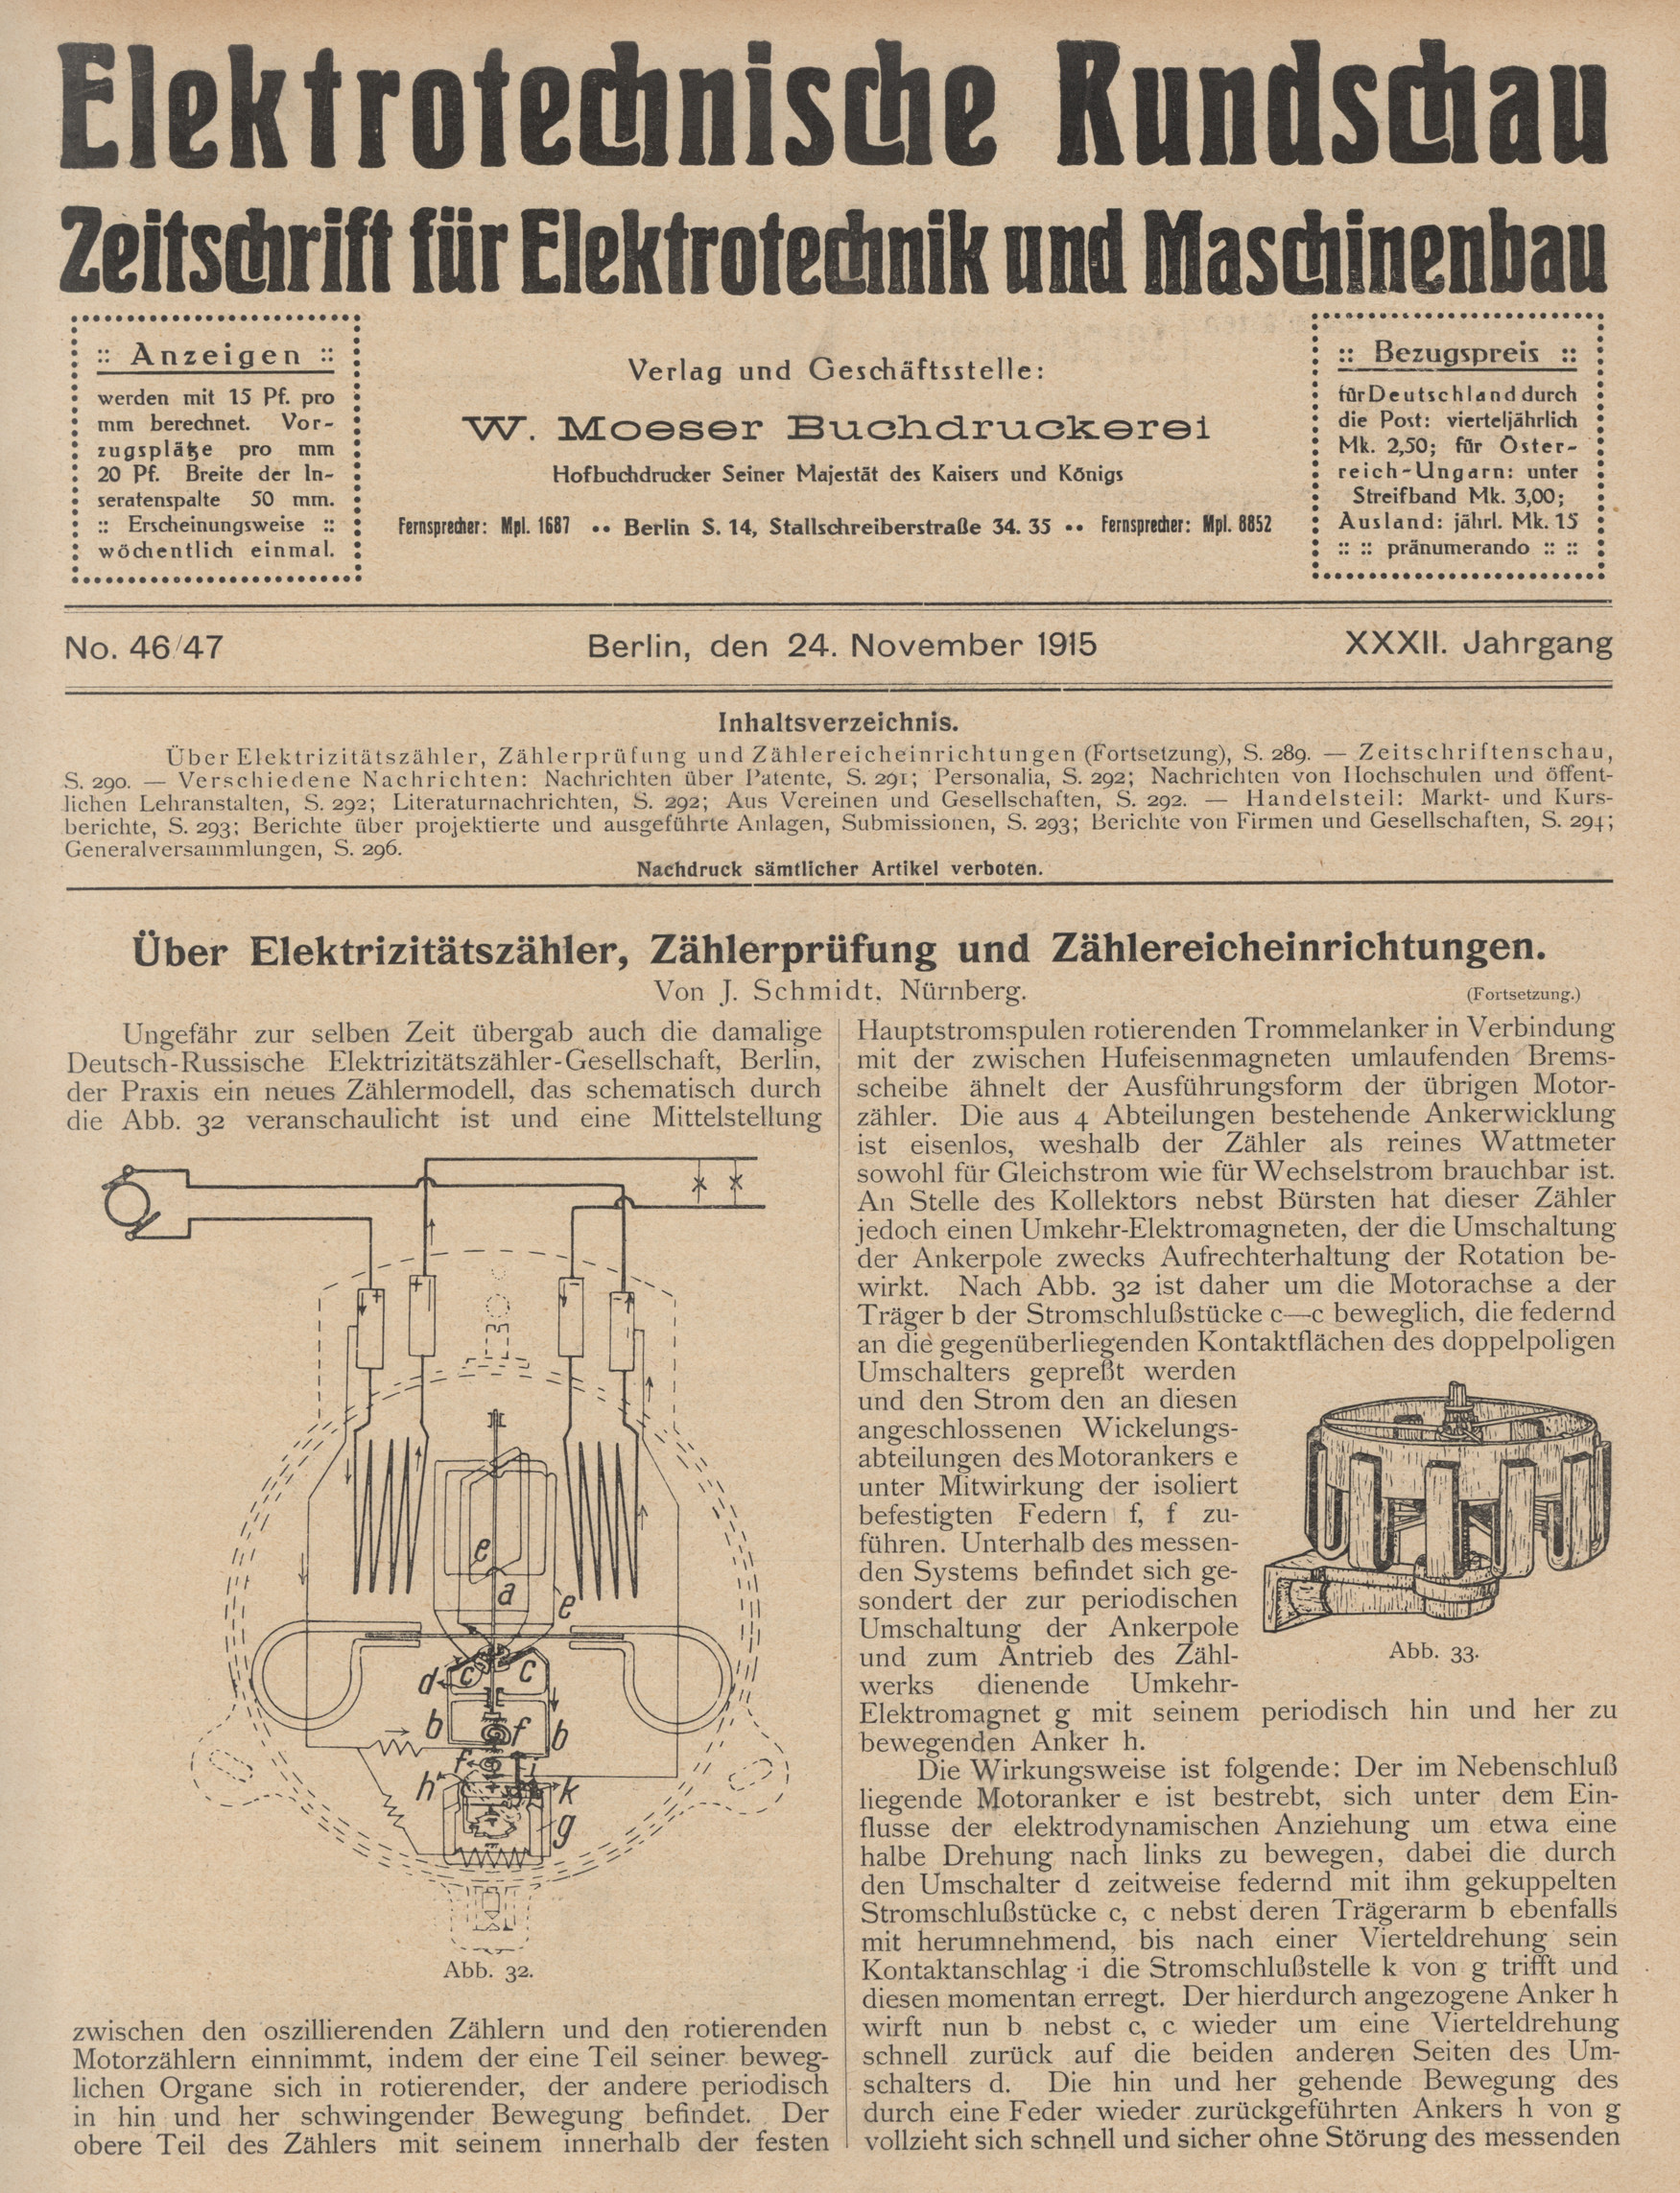 Elektrotechnische Rundschau : Zeitschrift für Elektrotechnik und Maschinenbau + Polytechnische Rundschau, No. 46/47, XXXII. Jahrgang